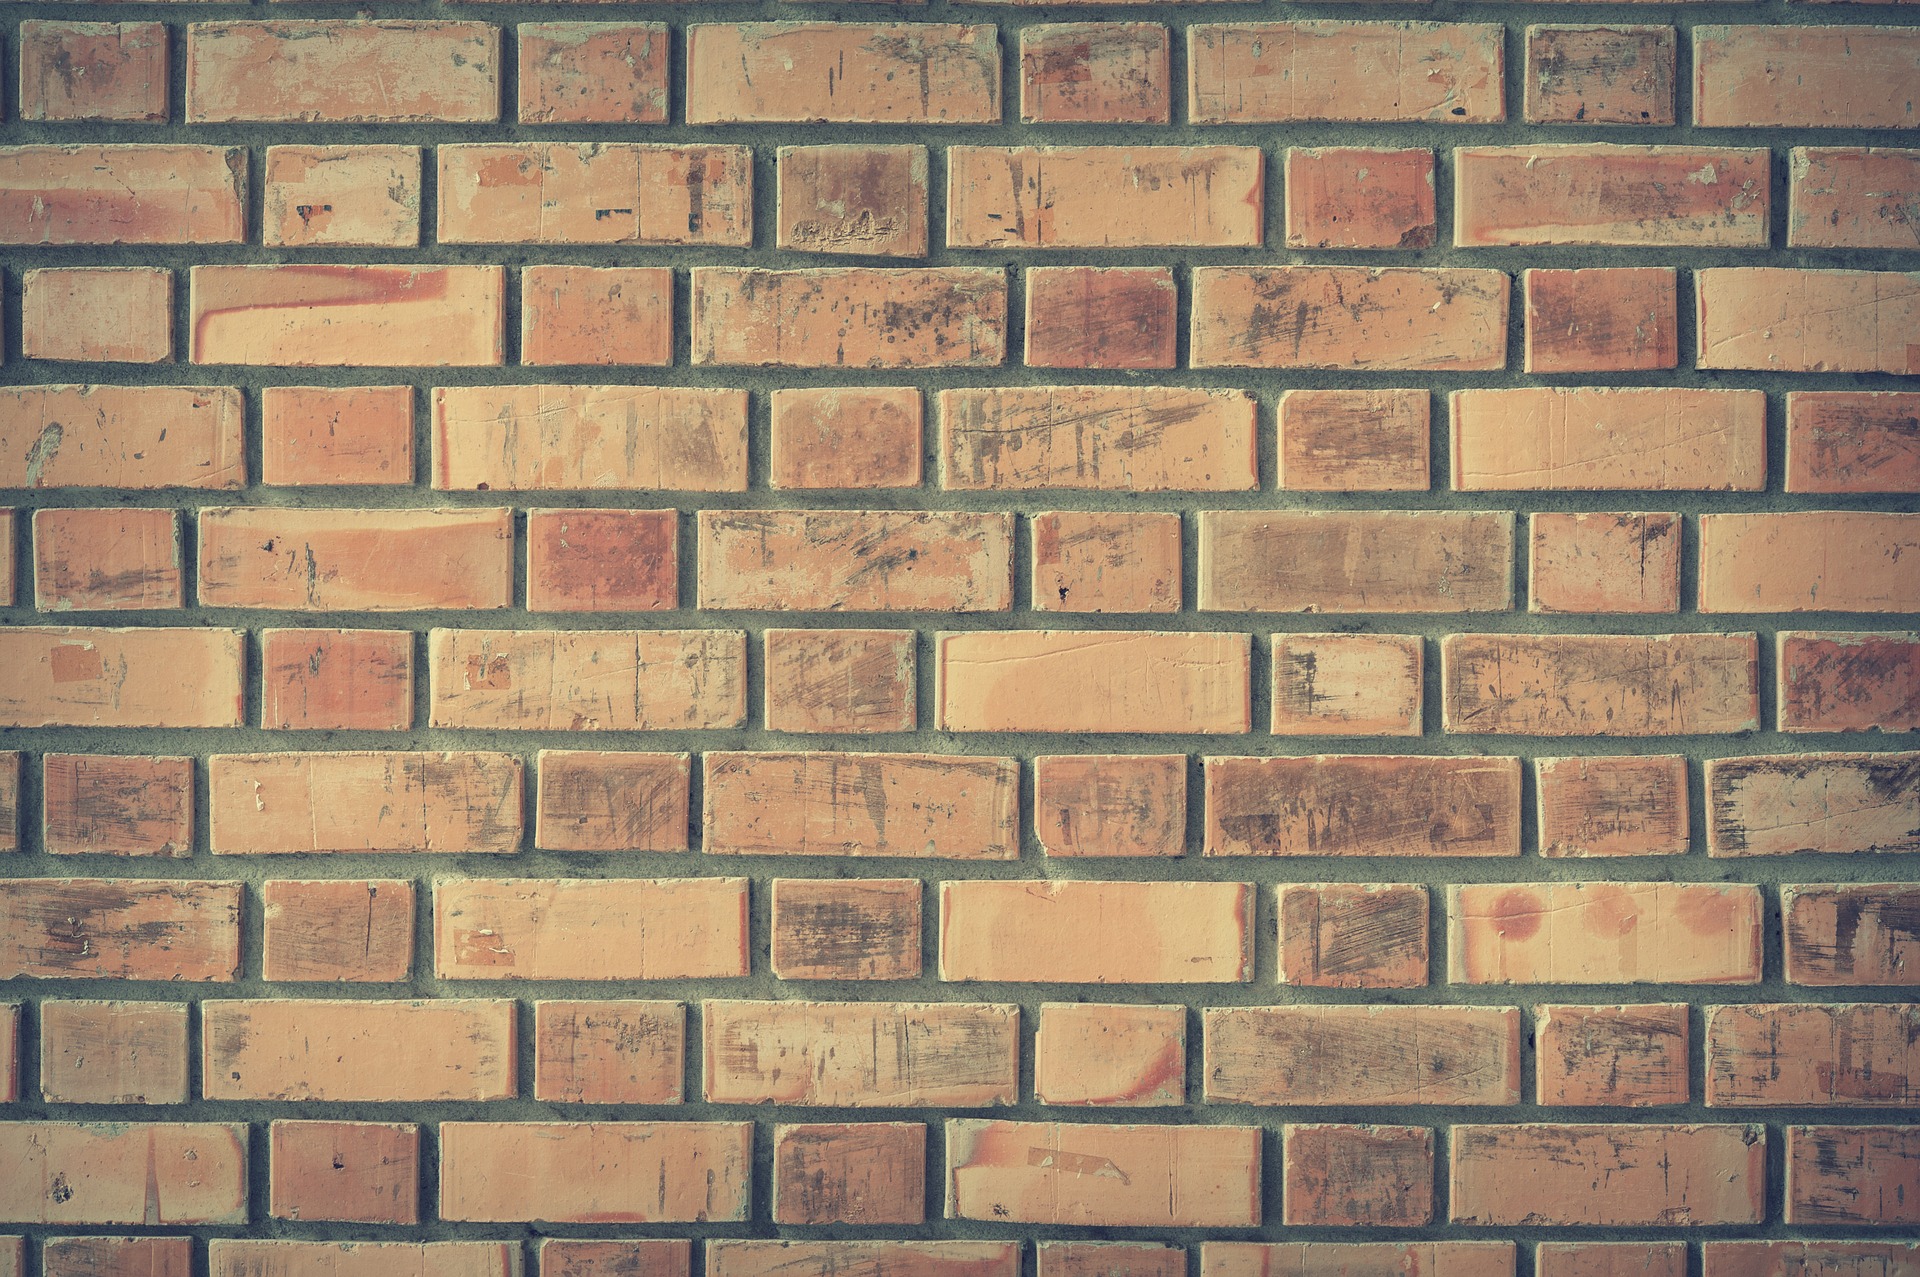 bricks-1846866_1920